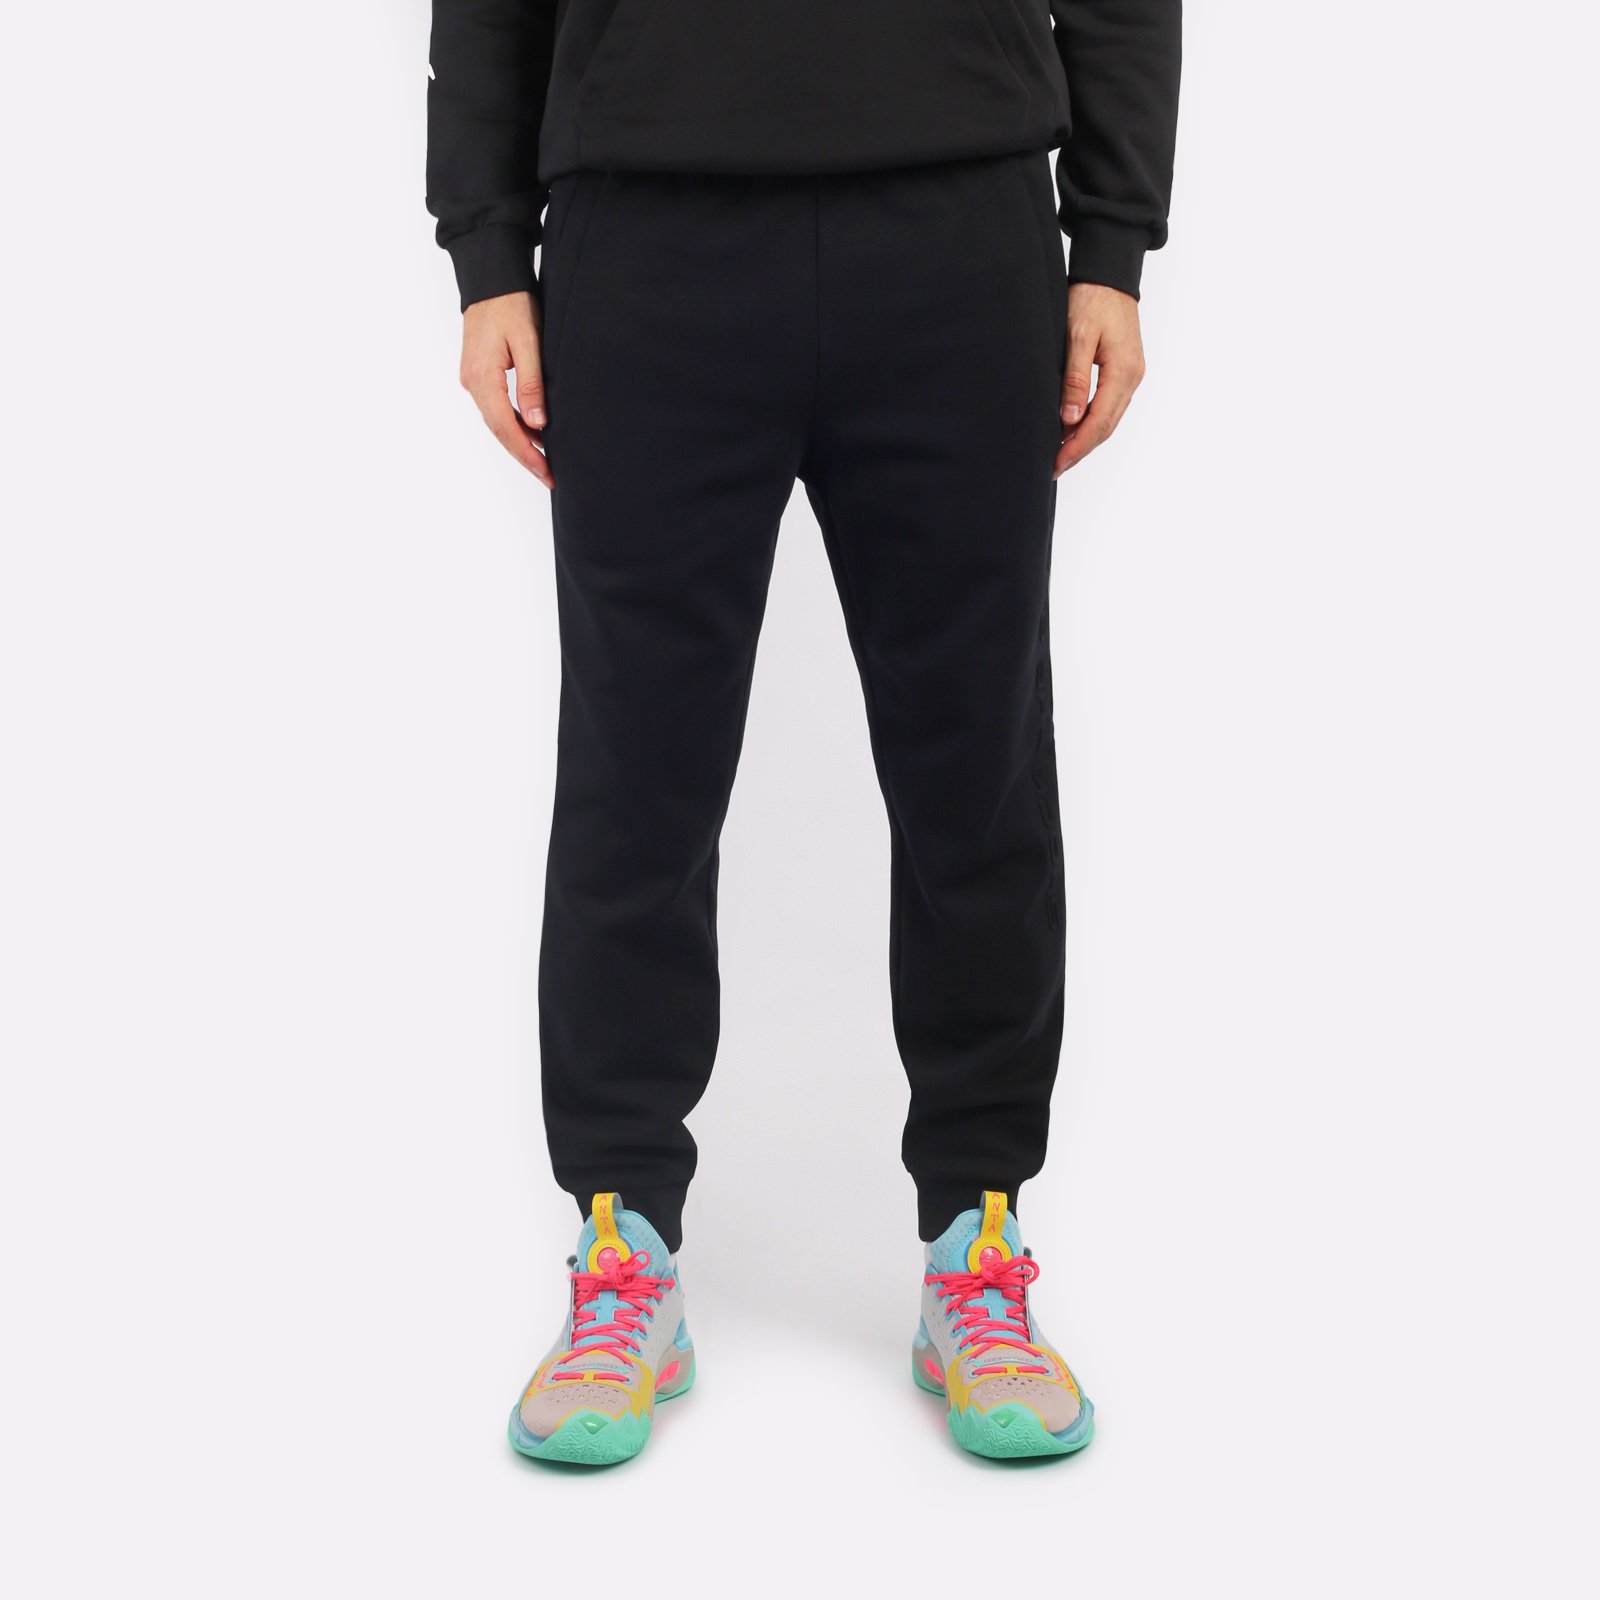 мужские брюки ANTA Knit Track Pants  (852341317N-3)  - цена, описание, фото 1